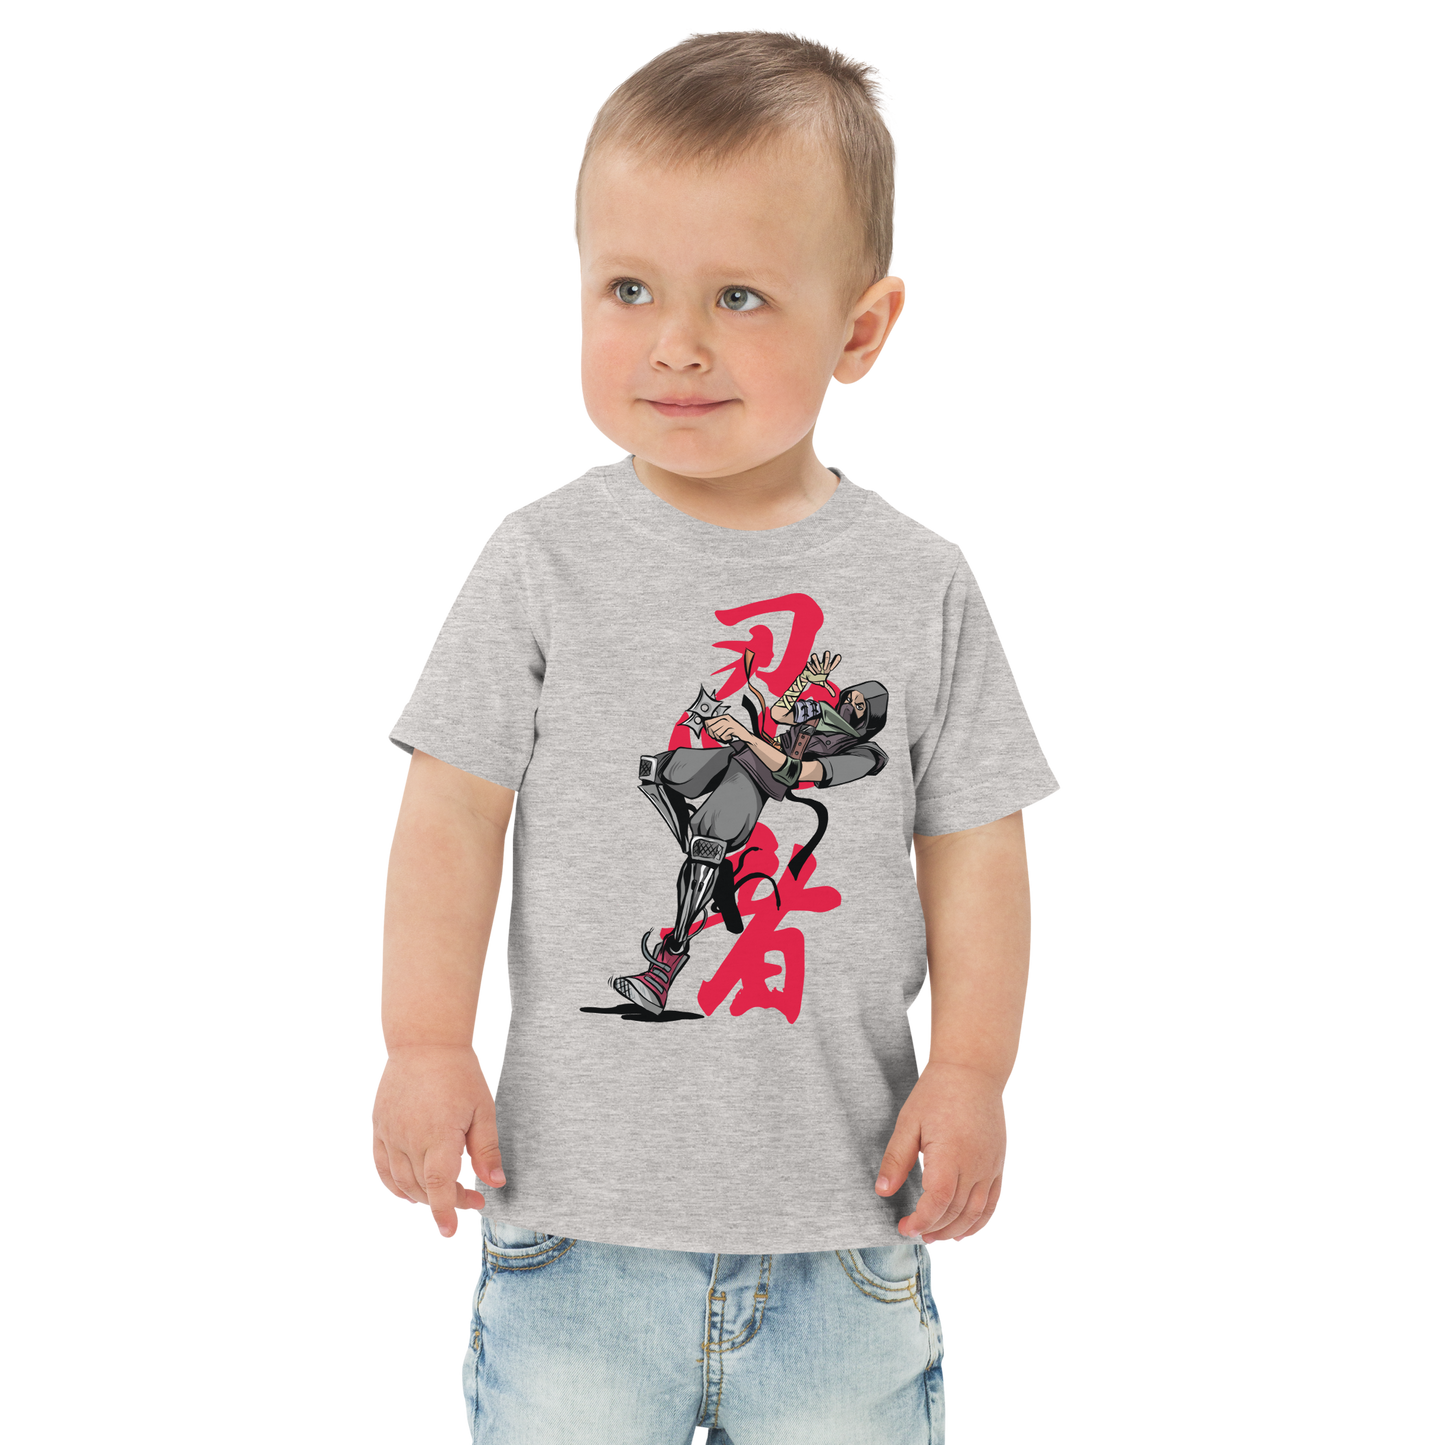 Ninja | Toddler jersey t-shirt